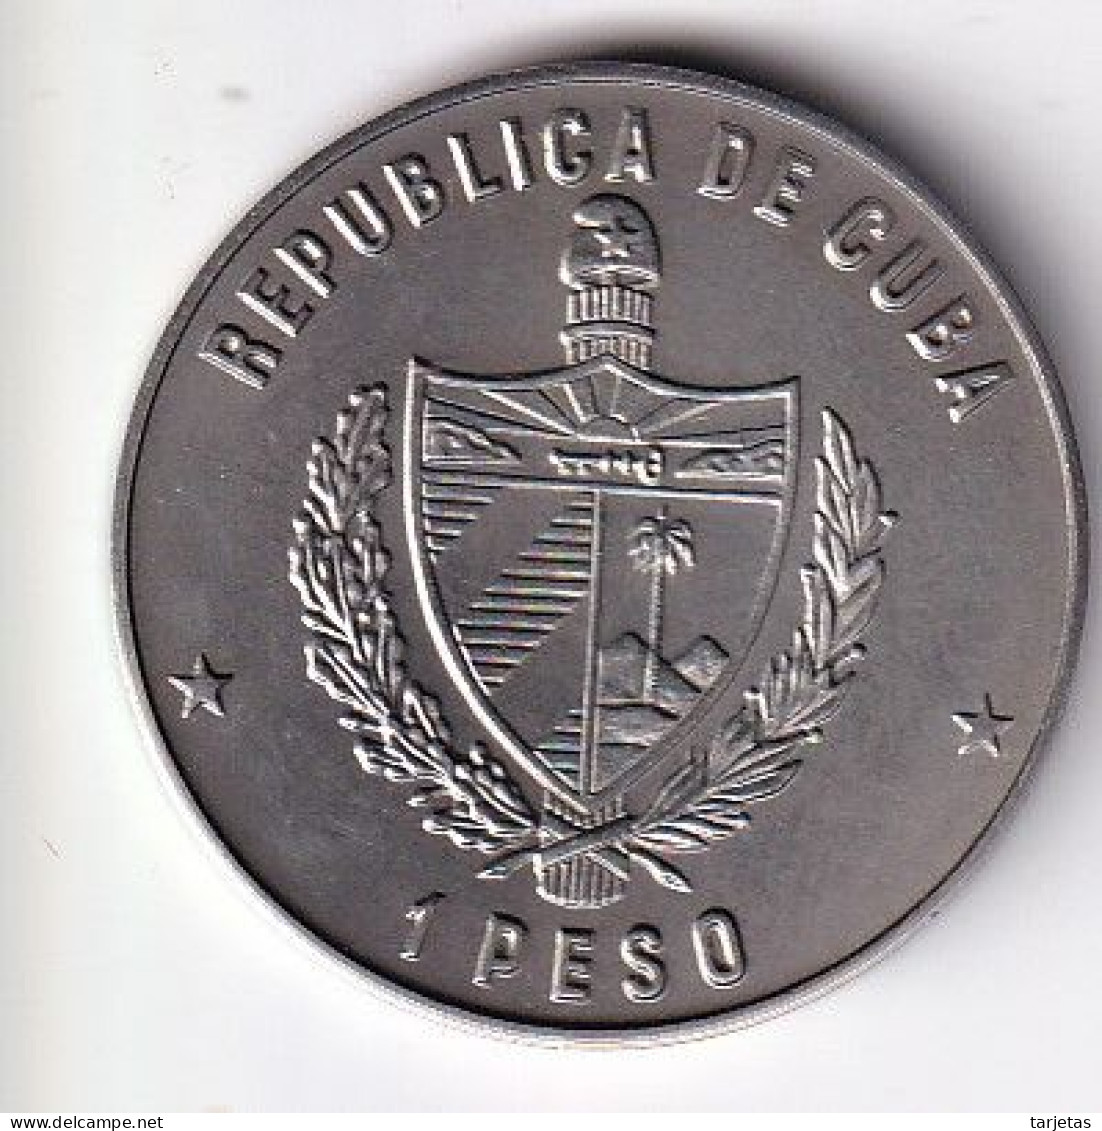 MONEDA DE CUBA DE 1 PESO DEL AÑO 1985 AÑO INTERNACIONAL DEL BOSQUE (COIN)  (NUEVA - UNC) - Cuba